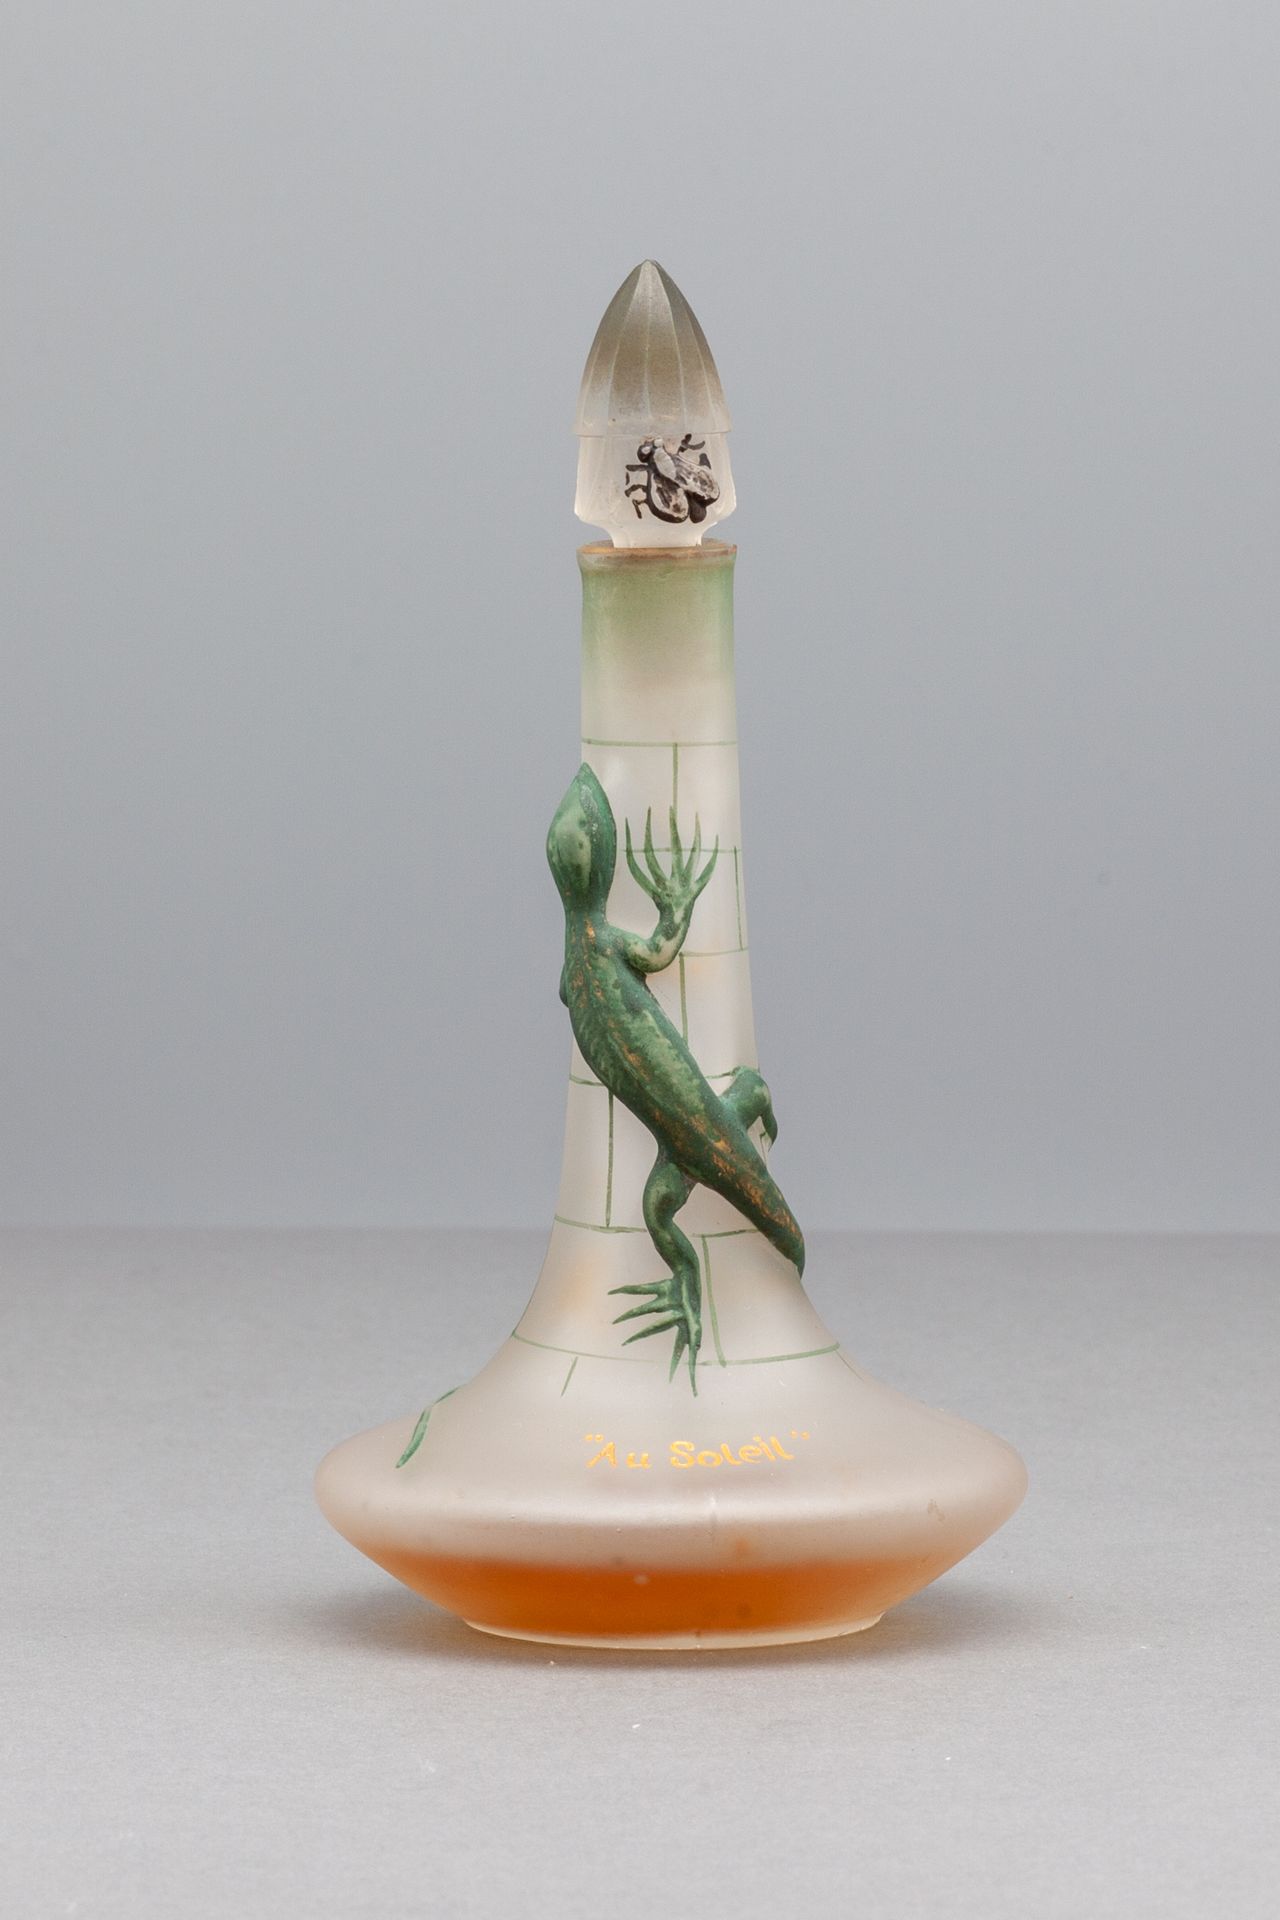 LUBIN "AU SOLEIL" 白色磨砂玻璃瓶，圆形瓶身，顶部是长颈，装饰有蜥蜴看猎物的图案，盖子上有模子。雕刻和镀金的 "AU SOLEIL"。底座下有空&hellip;